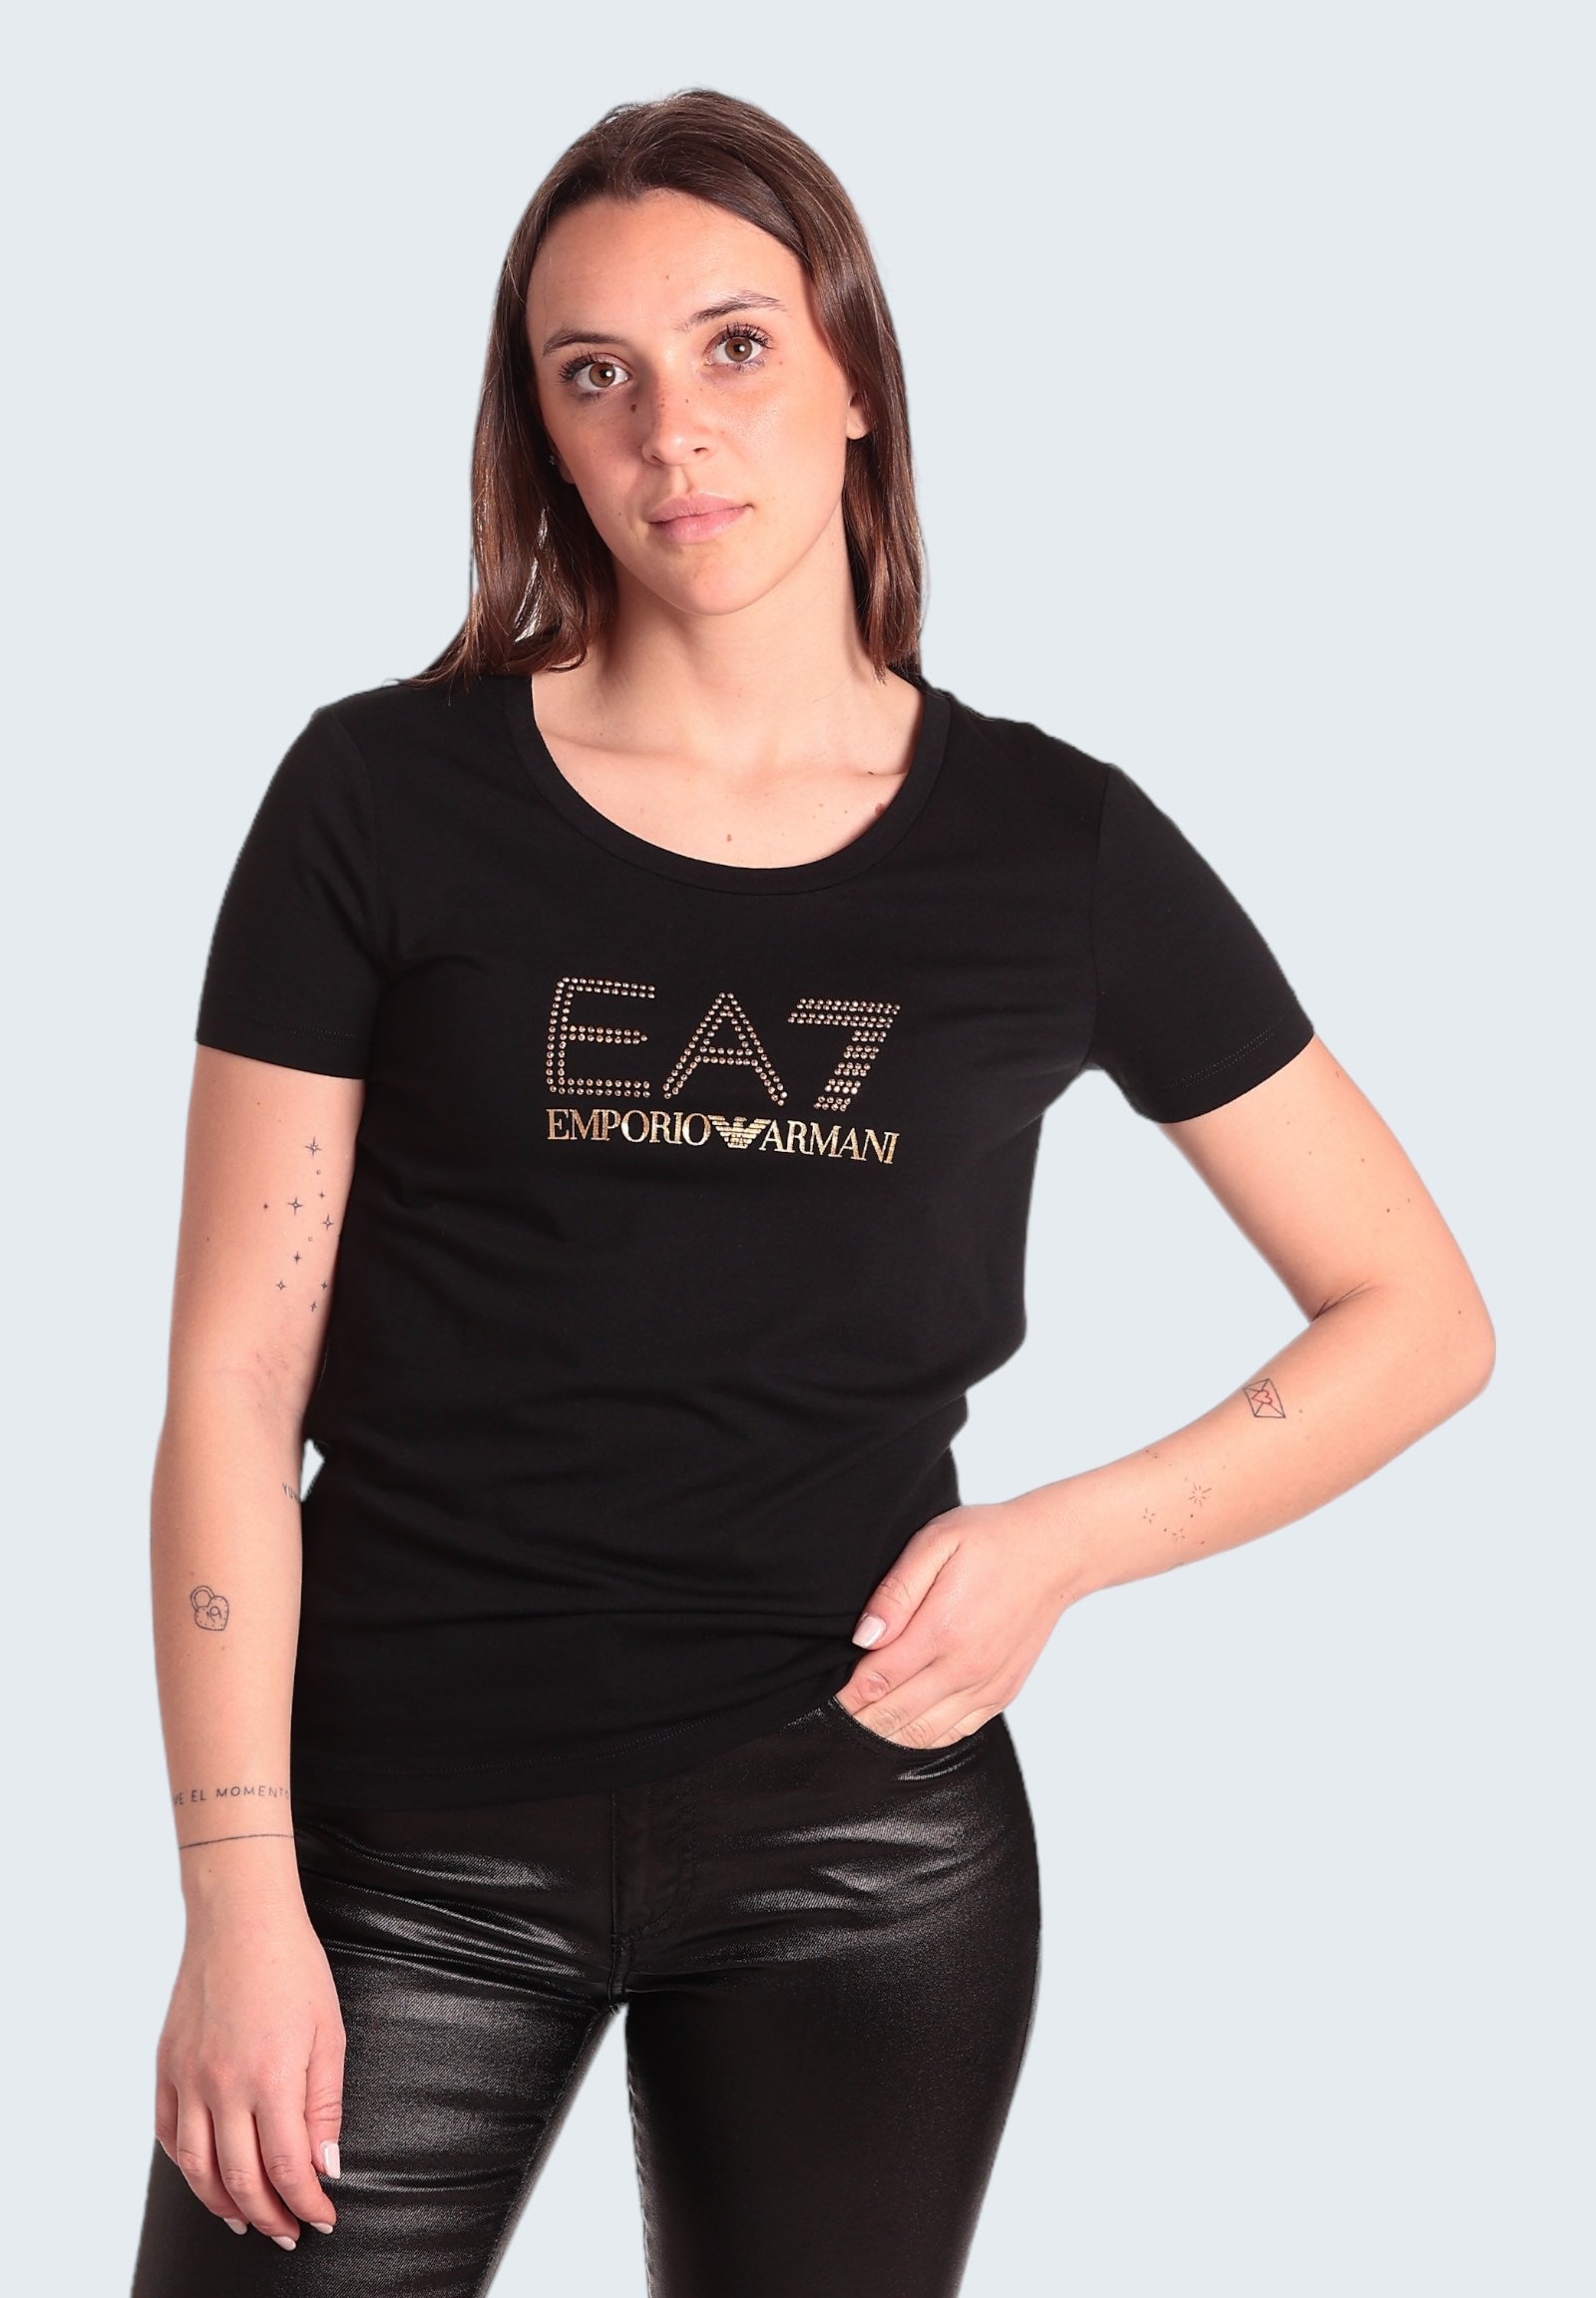 Ea7 Emporio Armani T-Shirt 8ntt67 Black